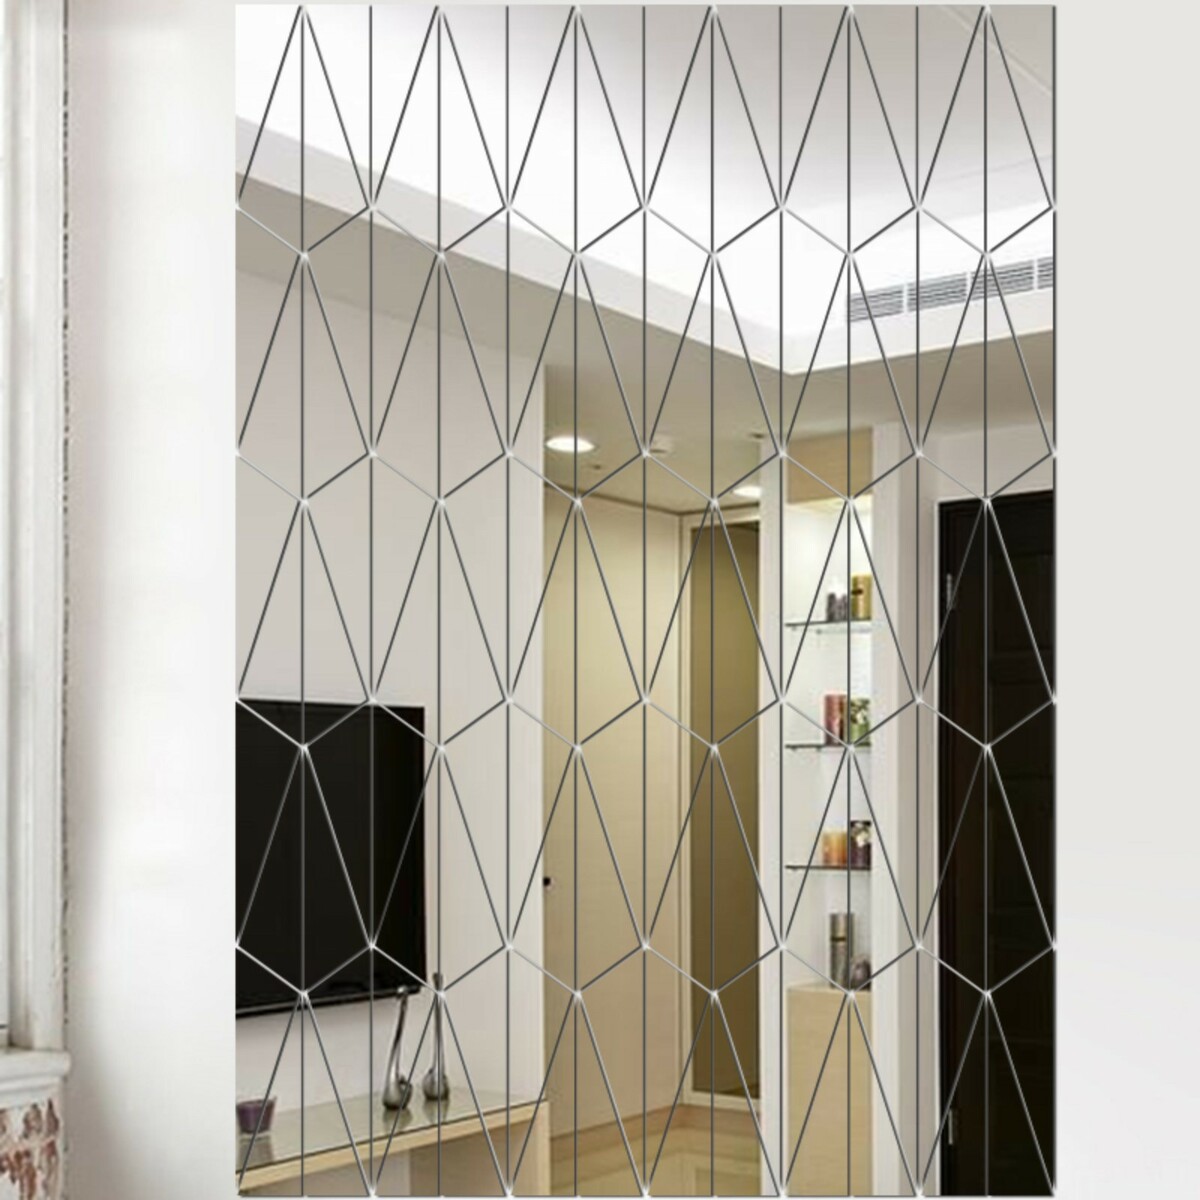 Наклейки интерьерные, зеркальные, декор настенный, панно 90 х 60 см, 120 эл чернокнижец зеркальные врата теней